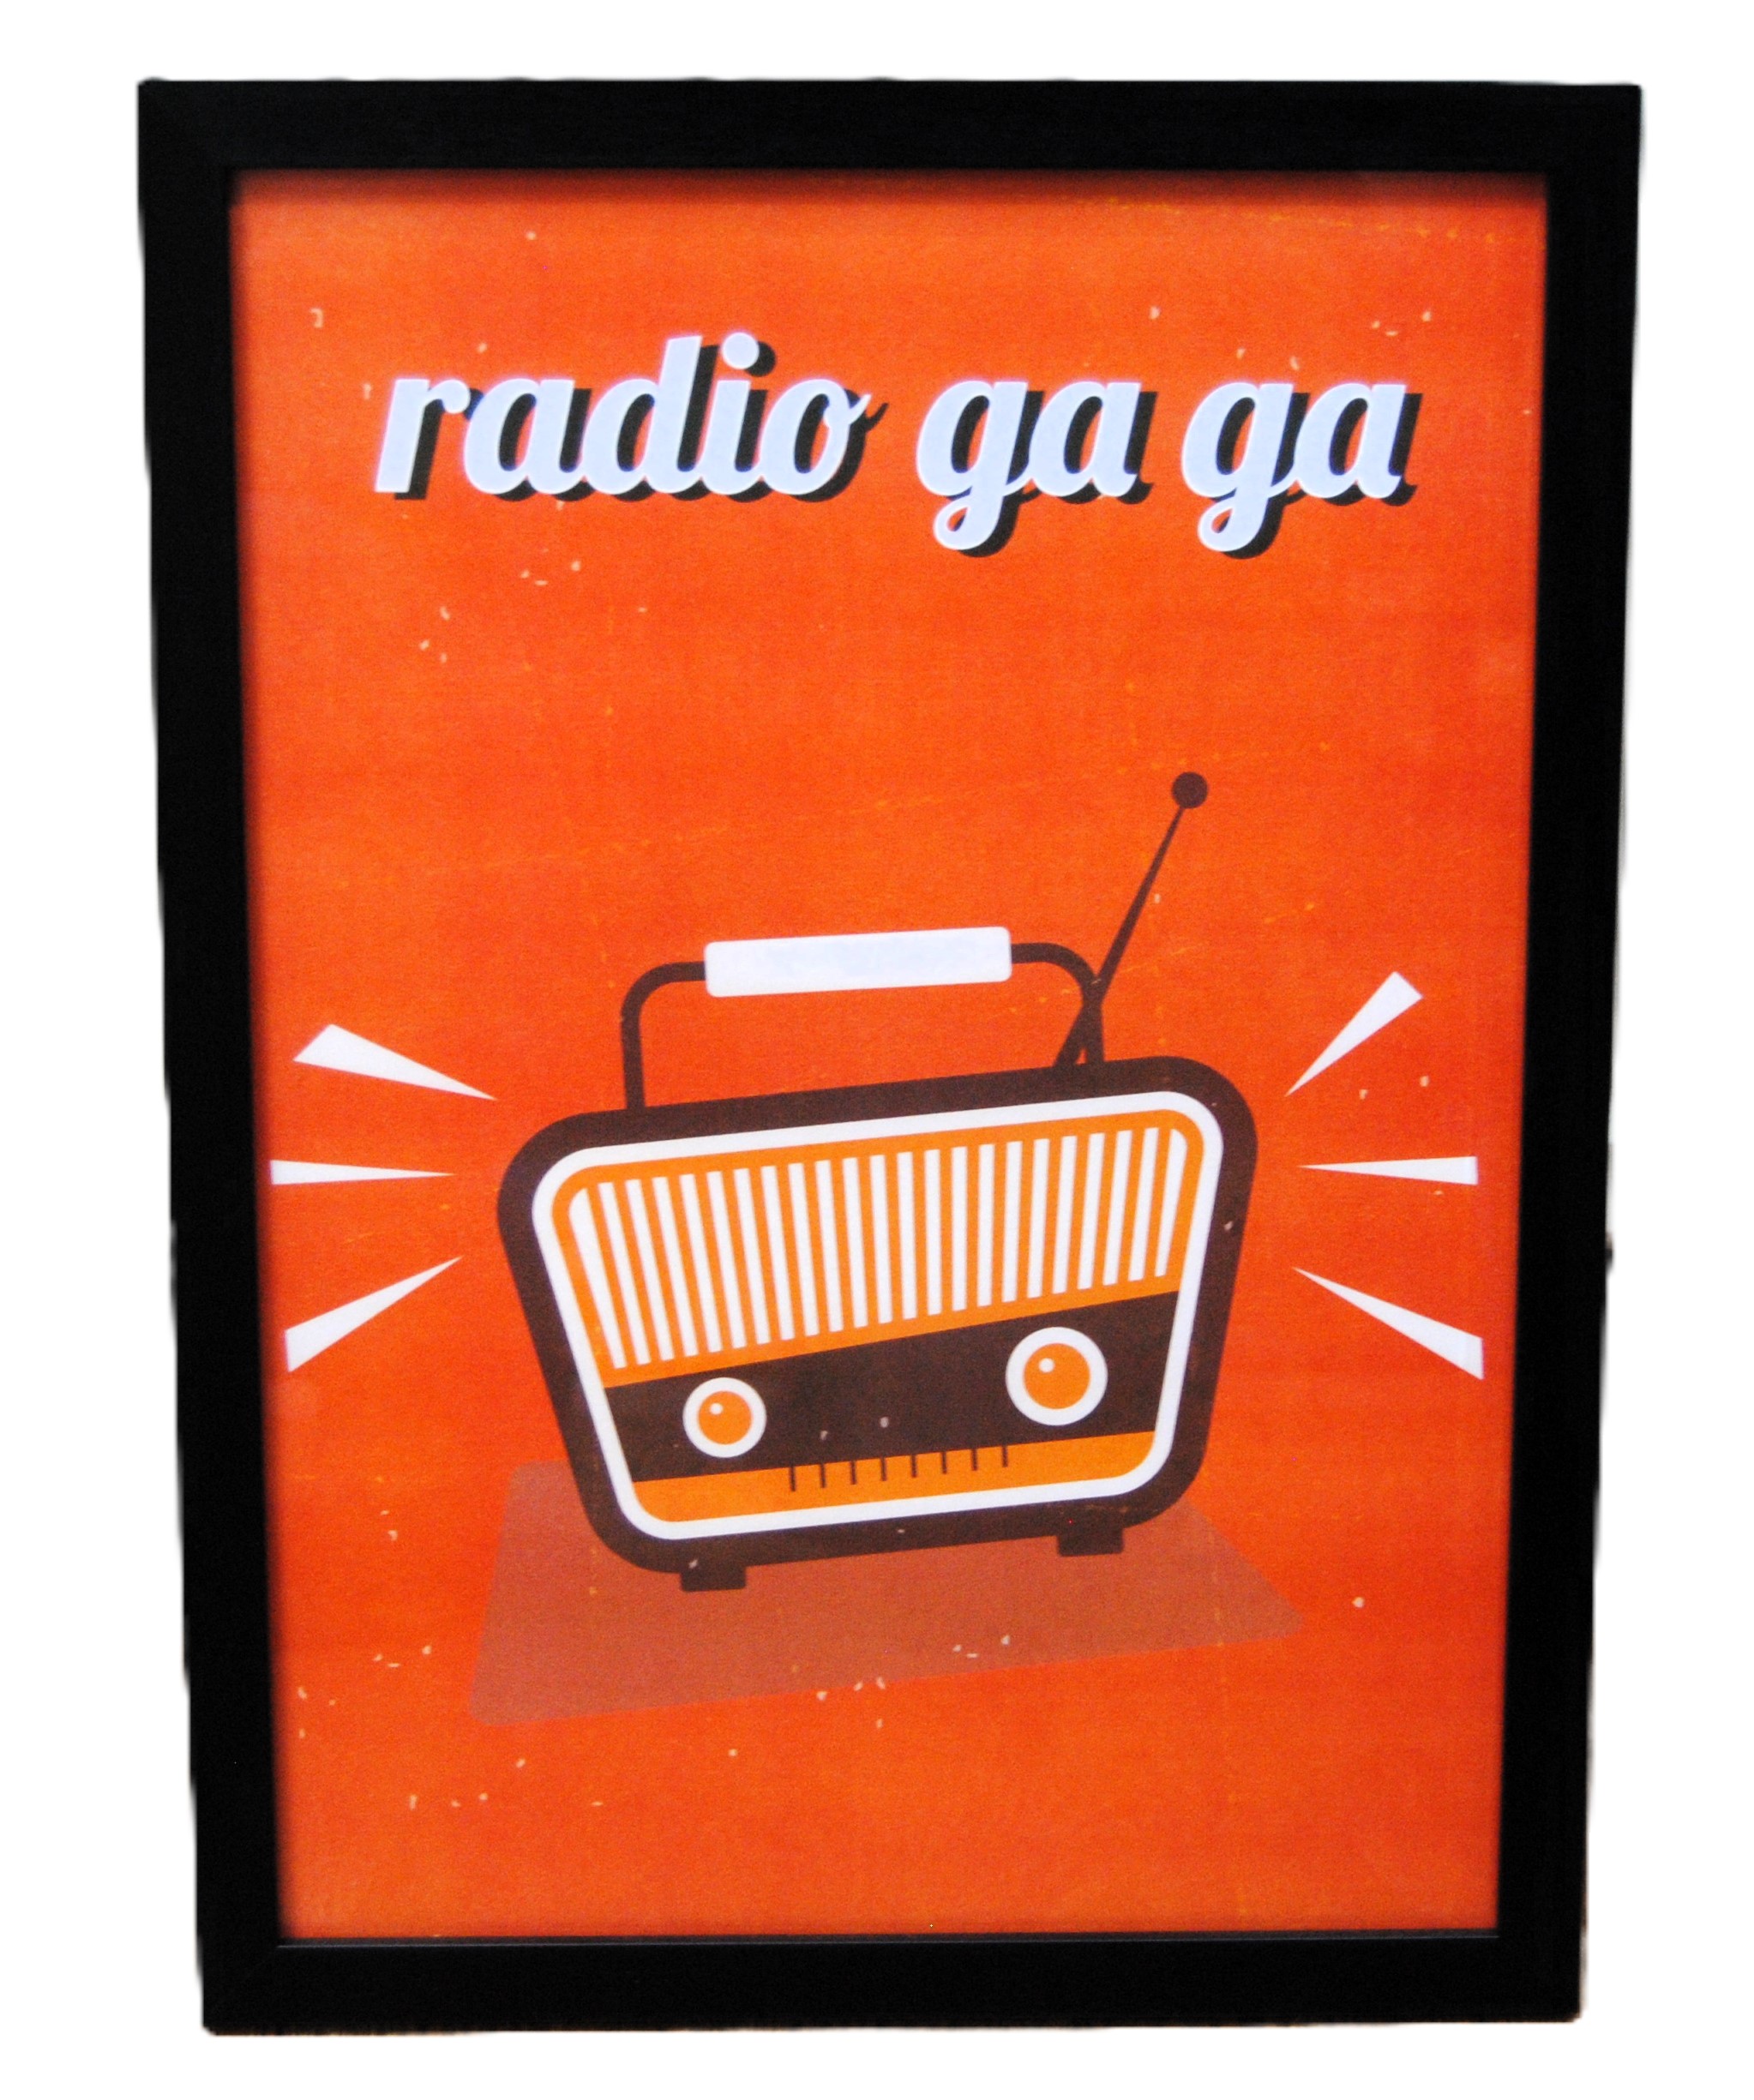 "Radio Ga Ga.